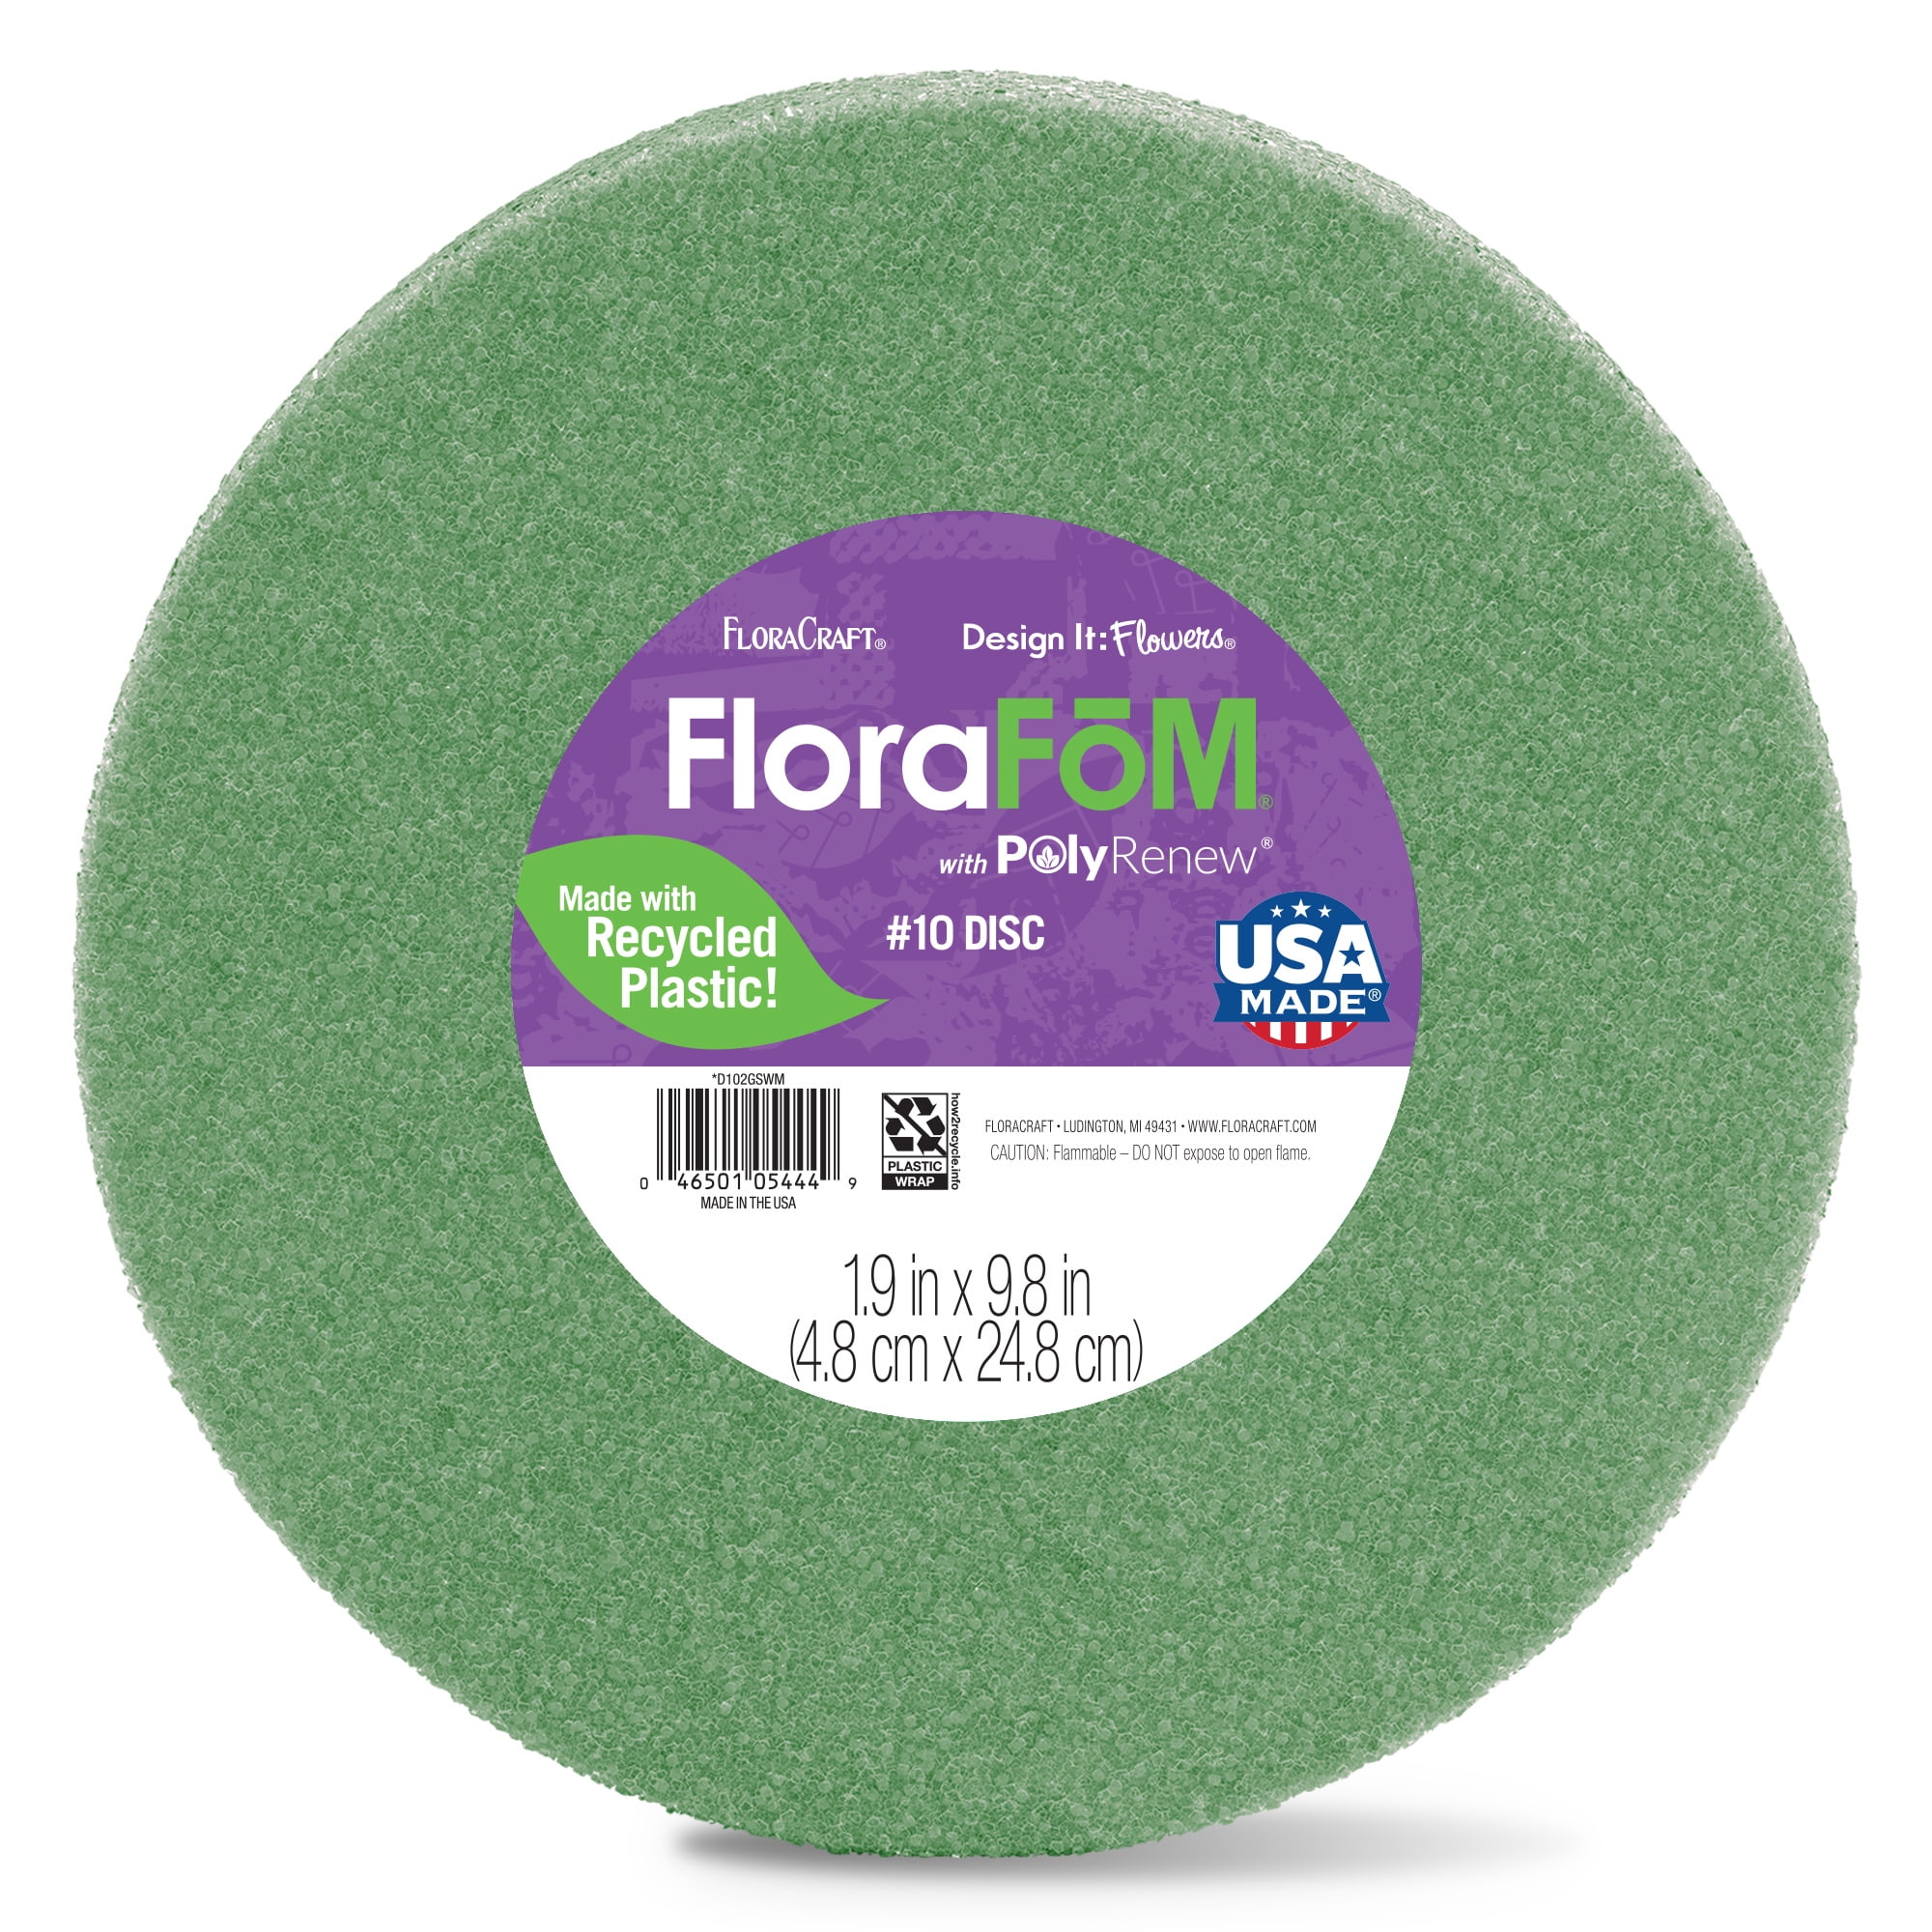 FloraCraft FloraFM Foam Disc 1.9 inch x 9.8 inch Green